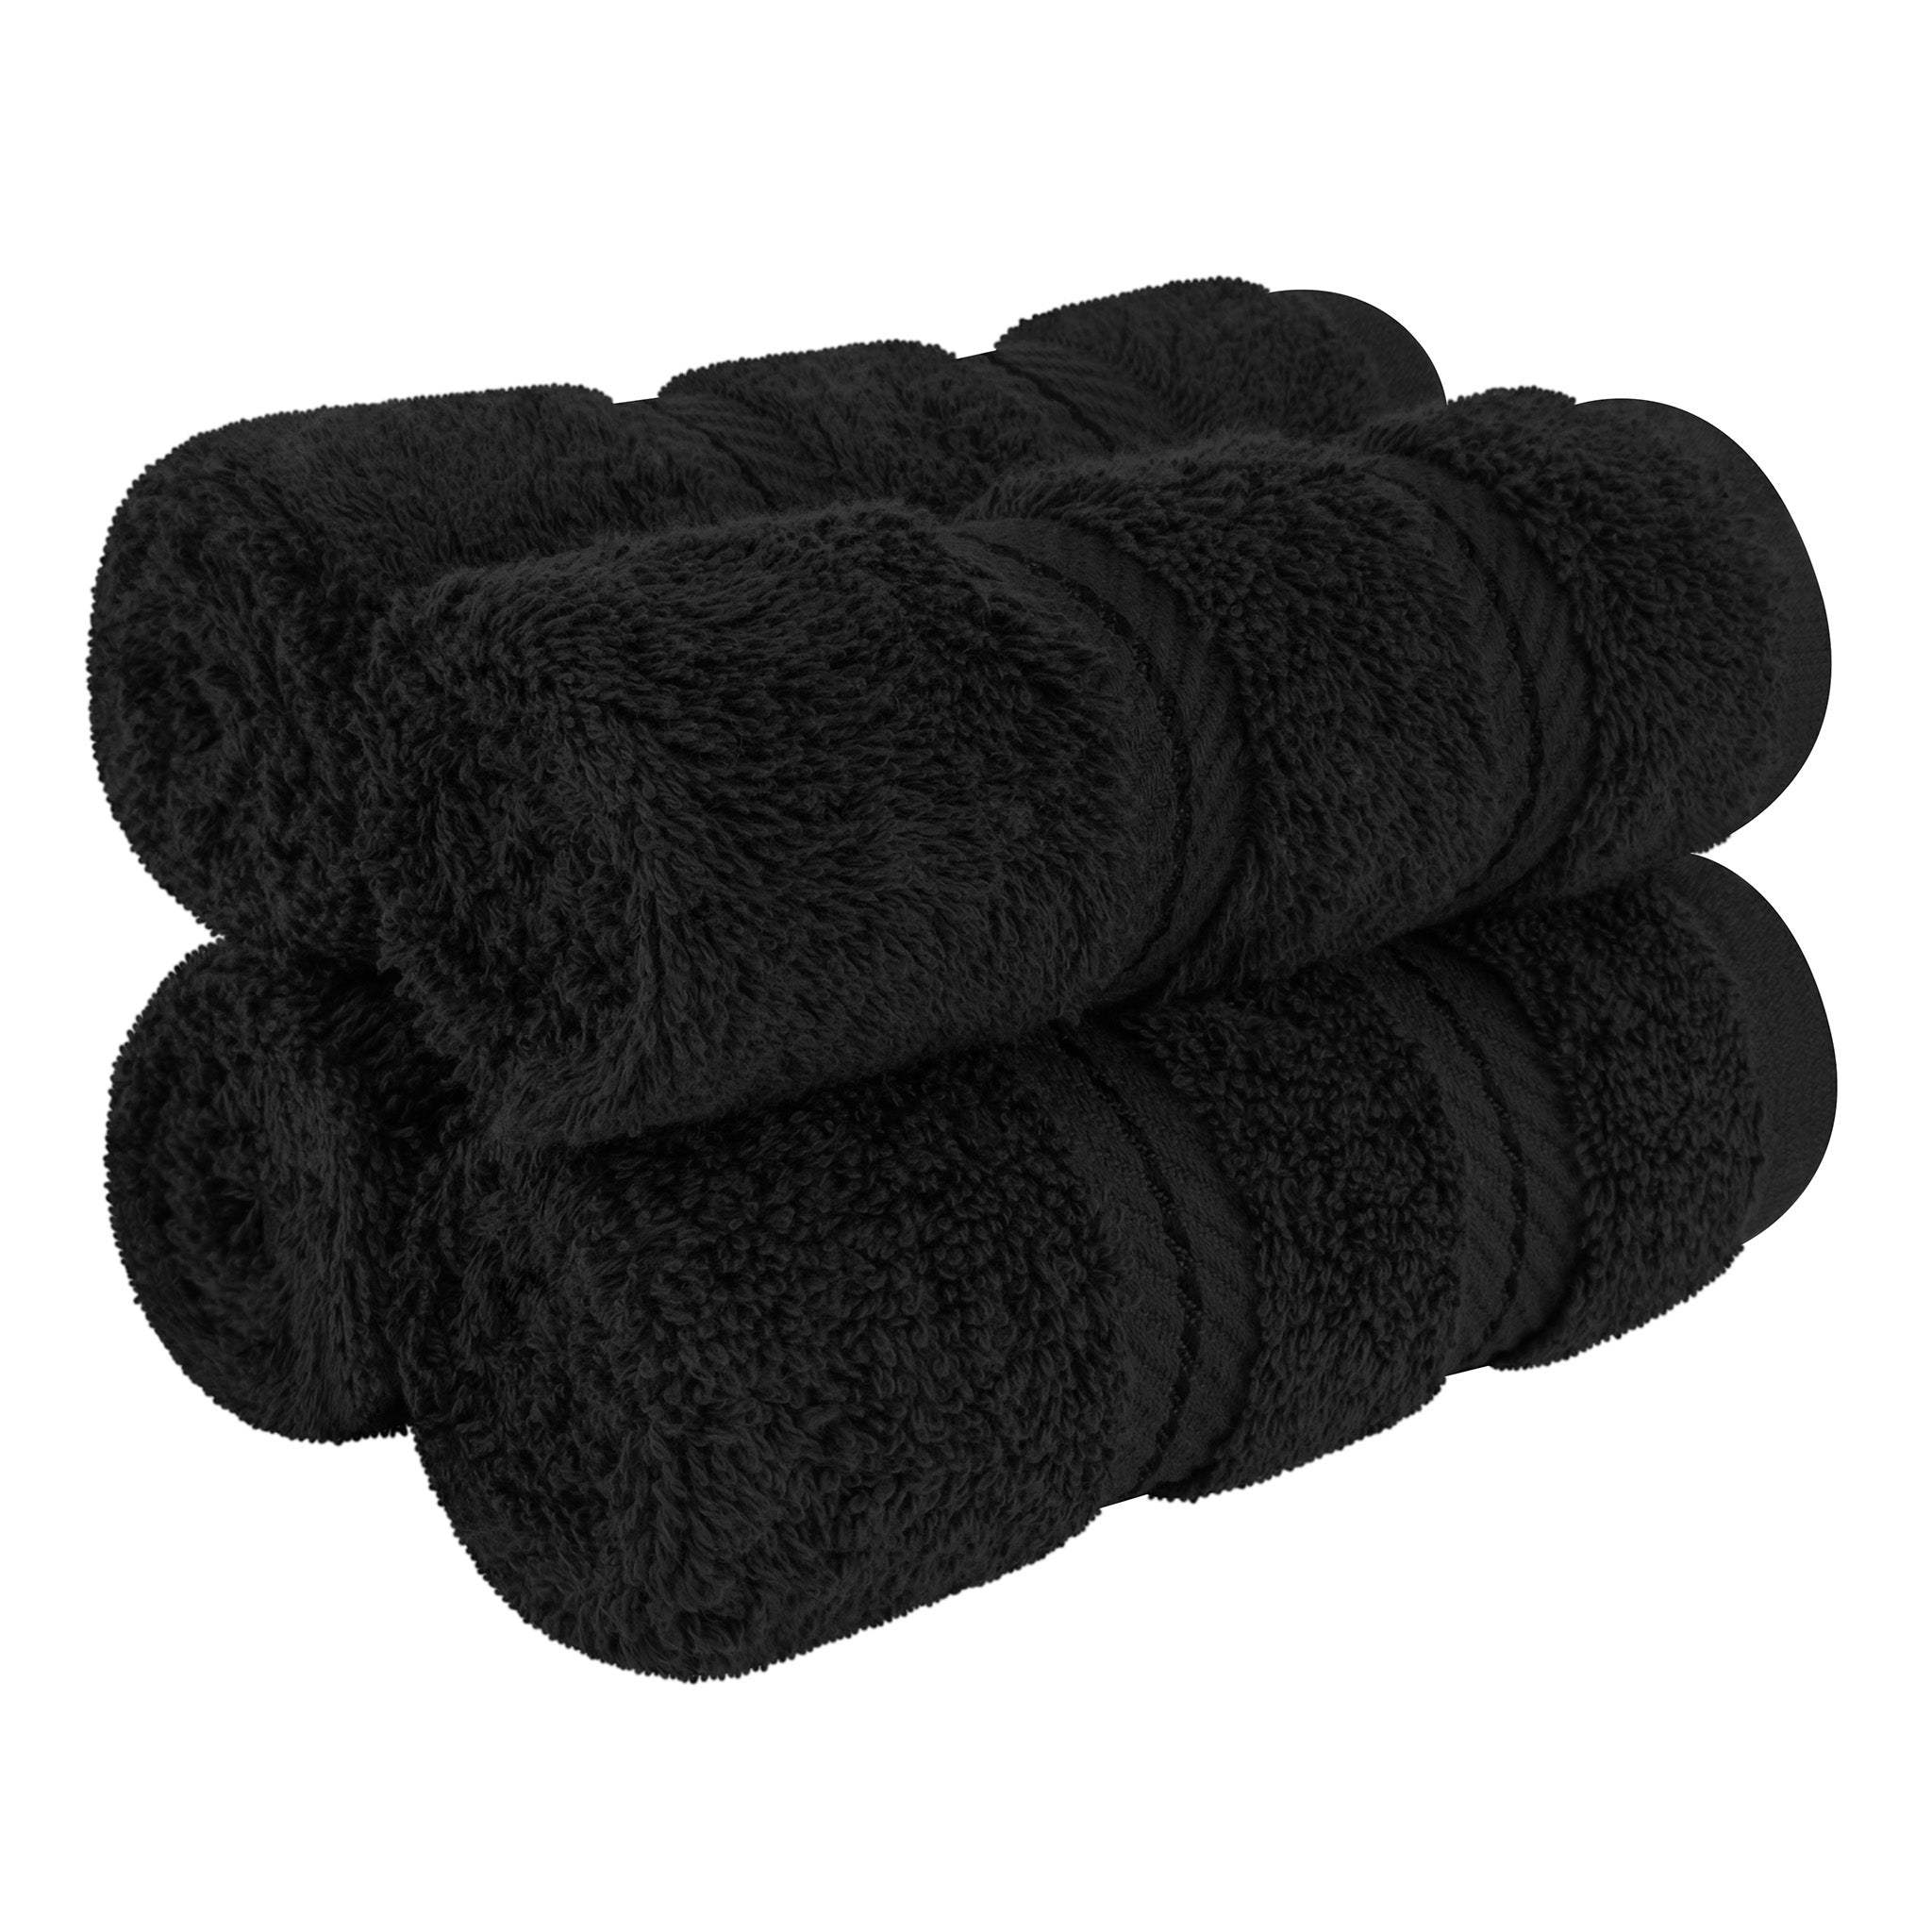 American Soft Linen 100% Turkish Cotton 4 Piece Washcloth Set black-1